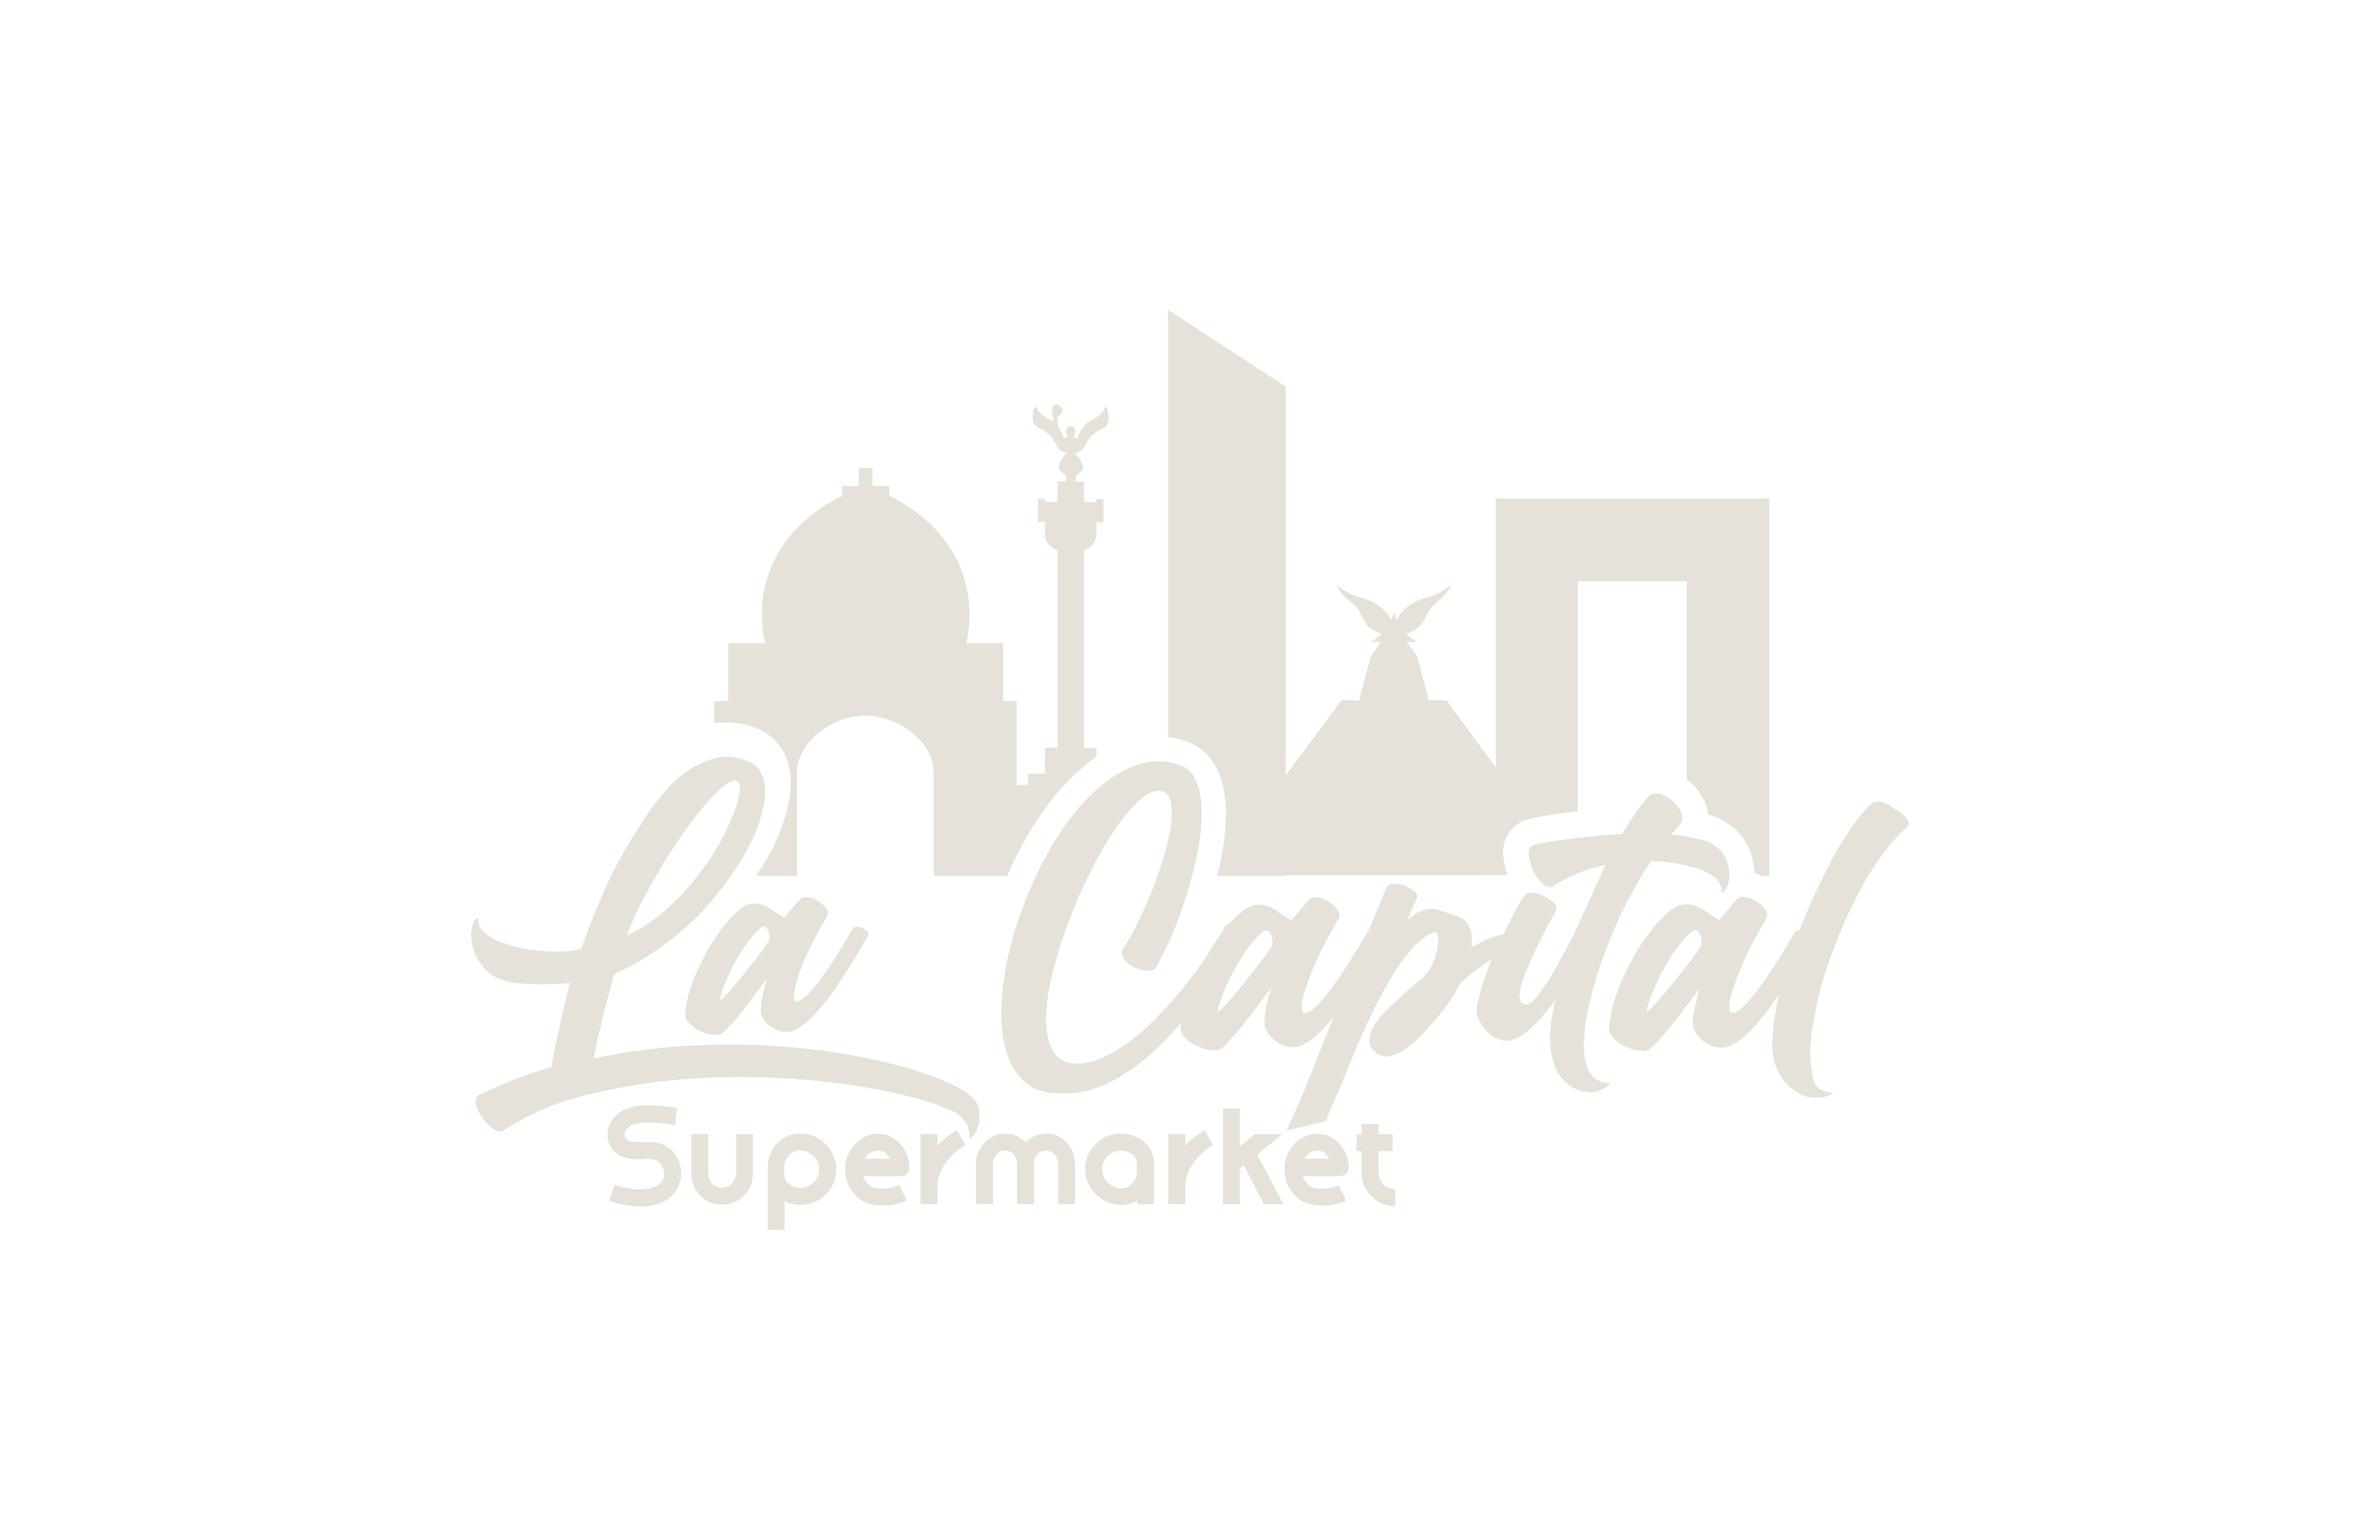 La capital supermarket